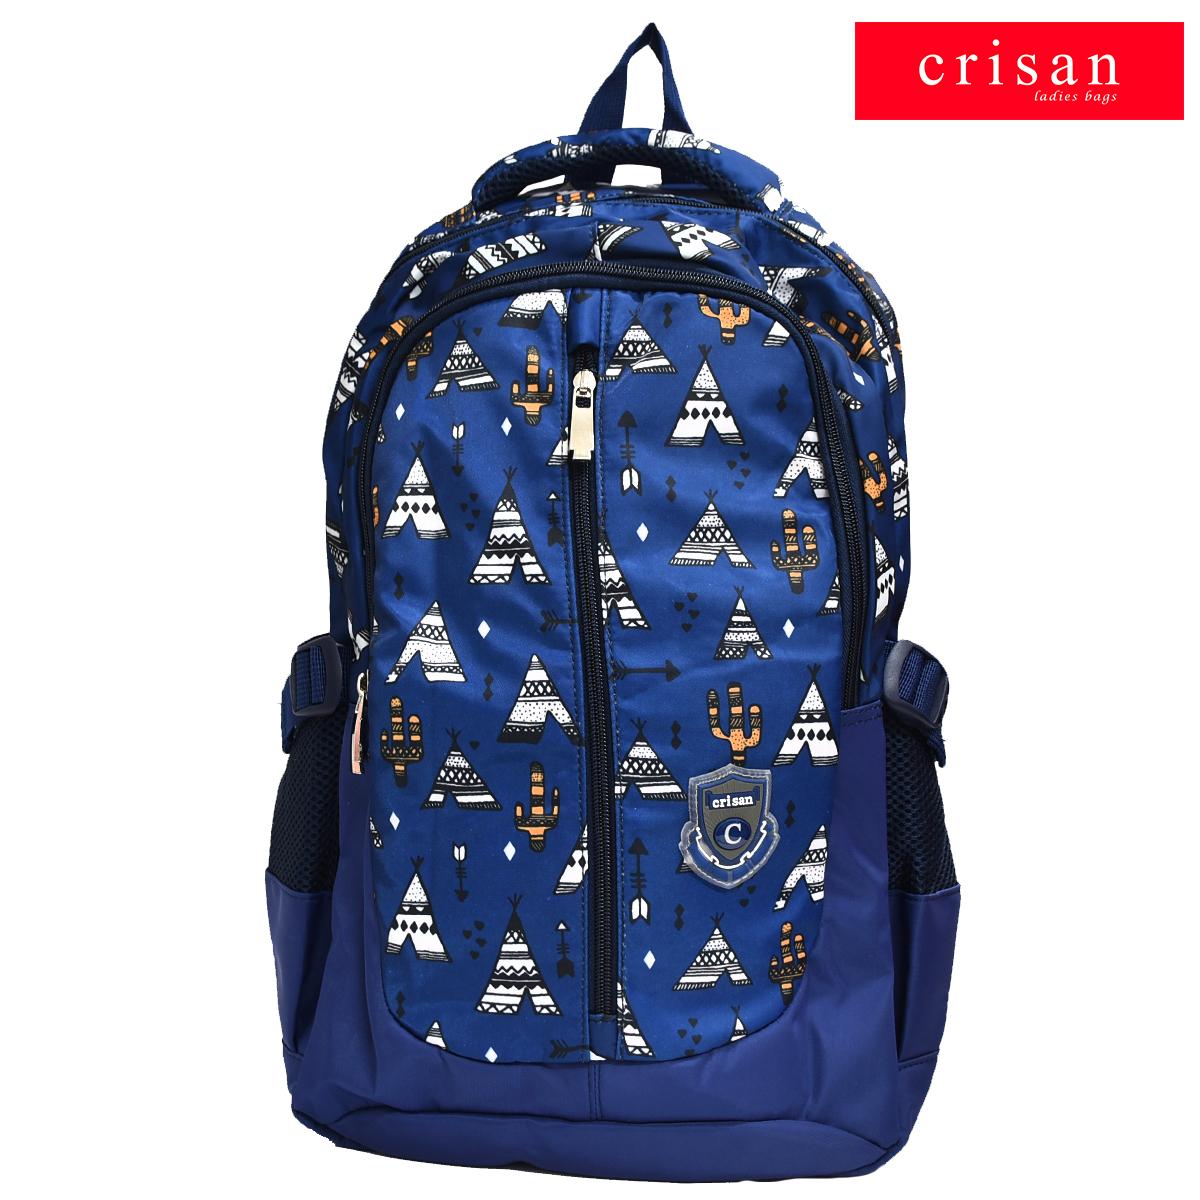 Crisan Bags - David - Backpack-Crisan bags